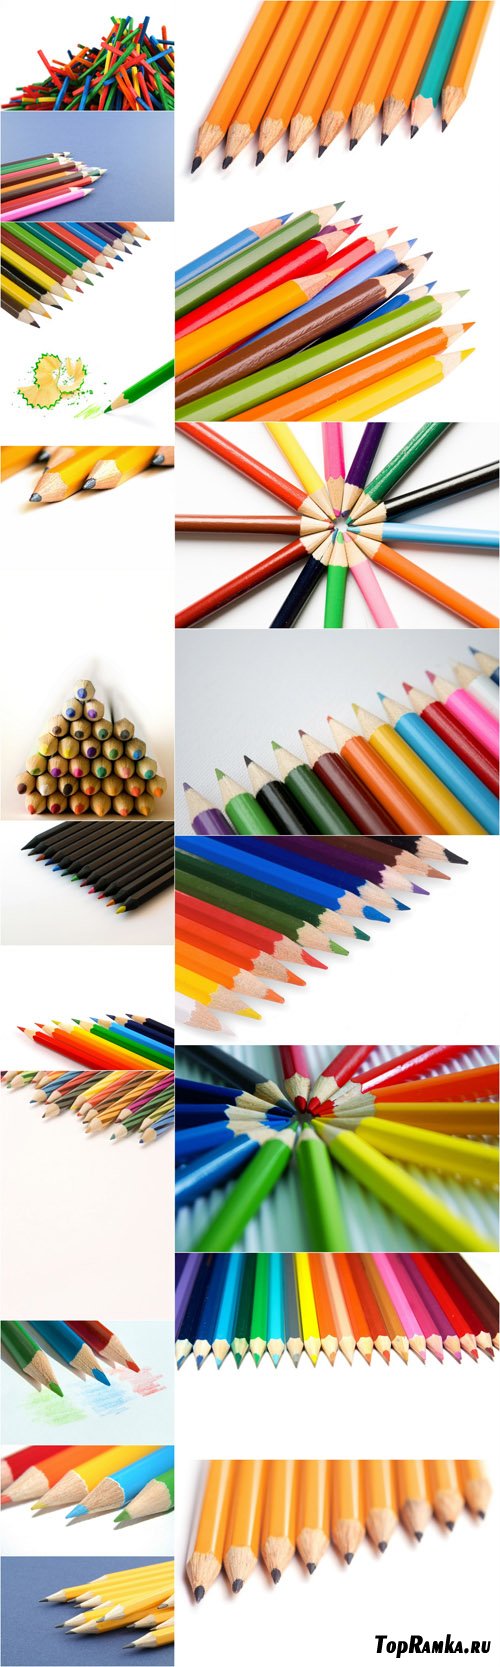 Photo Cliparts - Pencils